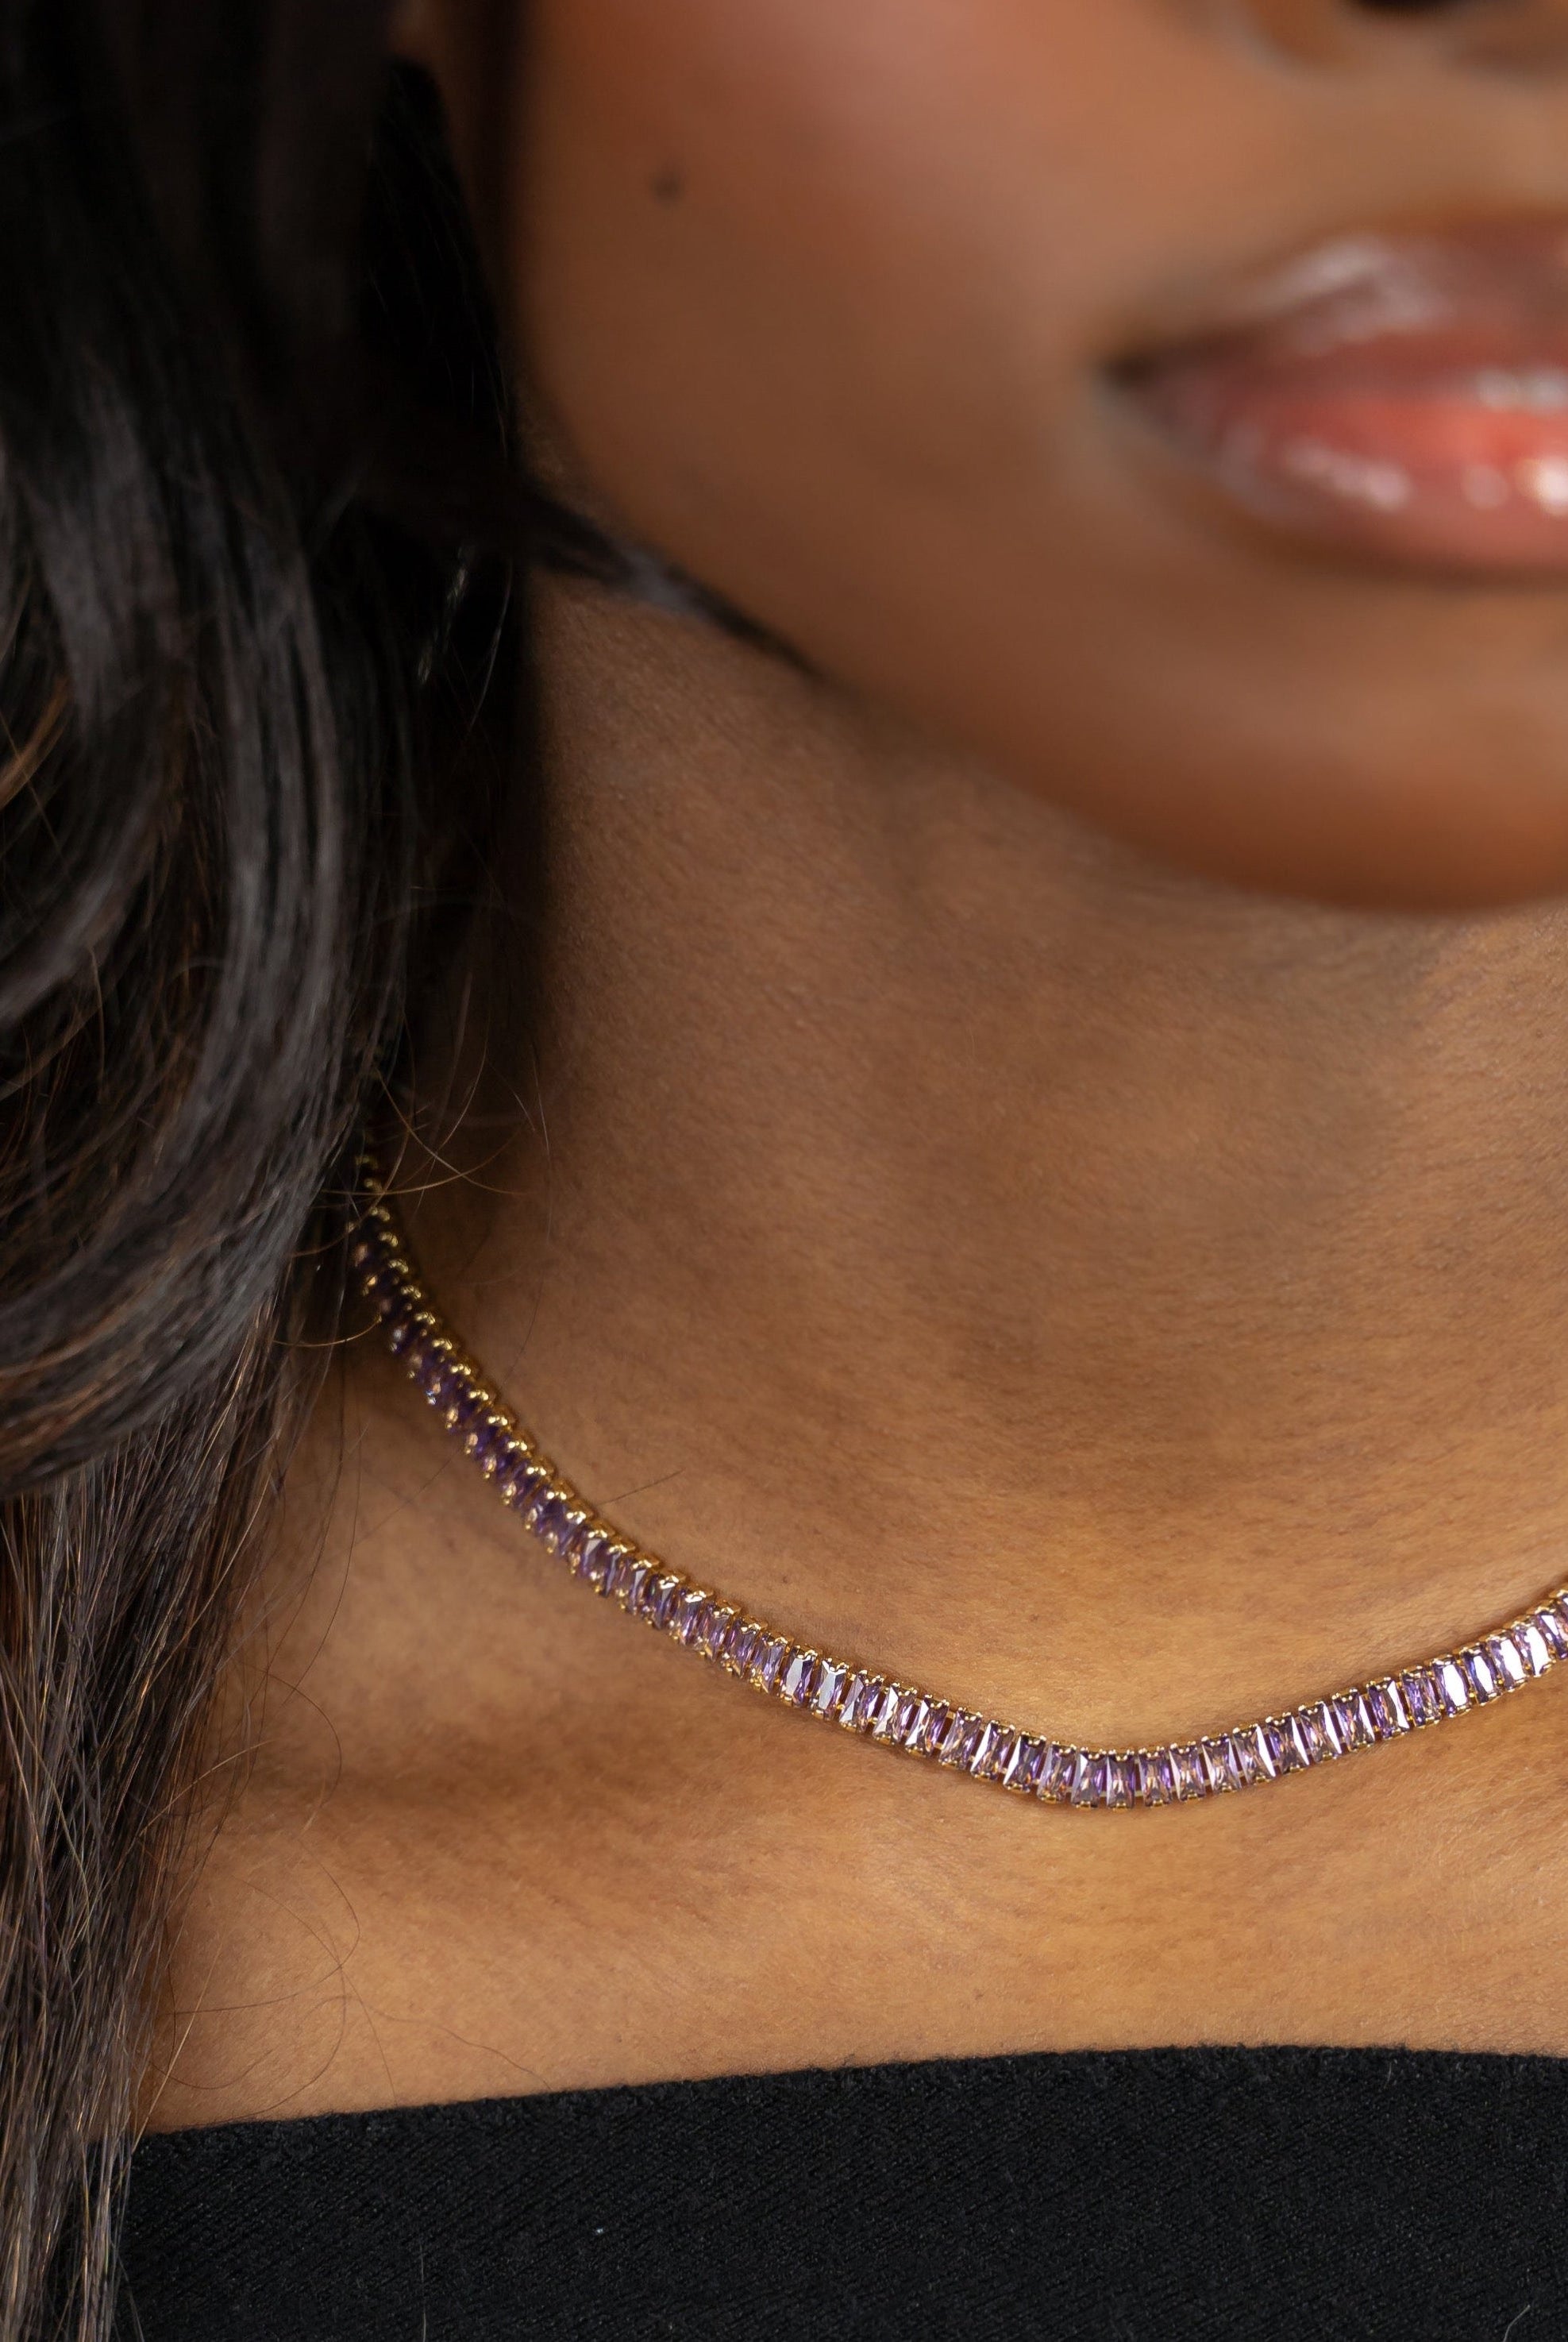 Baguette Burst Necklace in Lavender-Necklaces-The Sis Kiss®-Urban Threadz Boutique, Women's Fashion Boutique in Saugatuck, MI